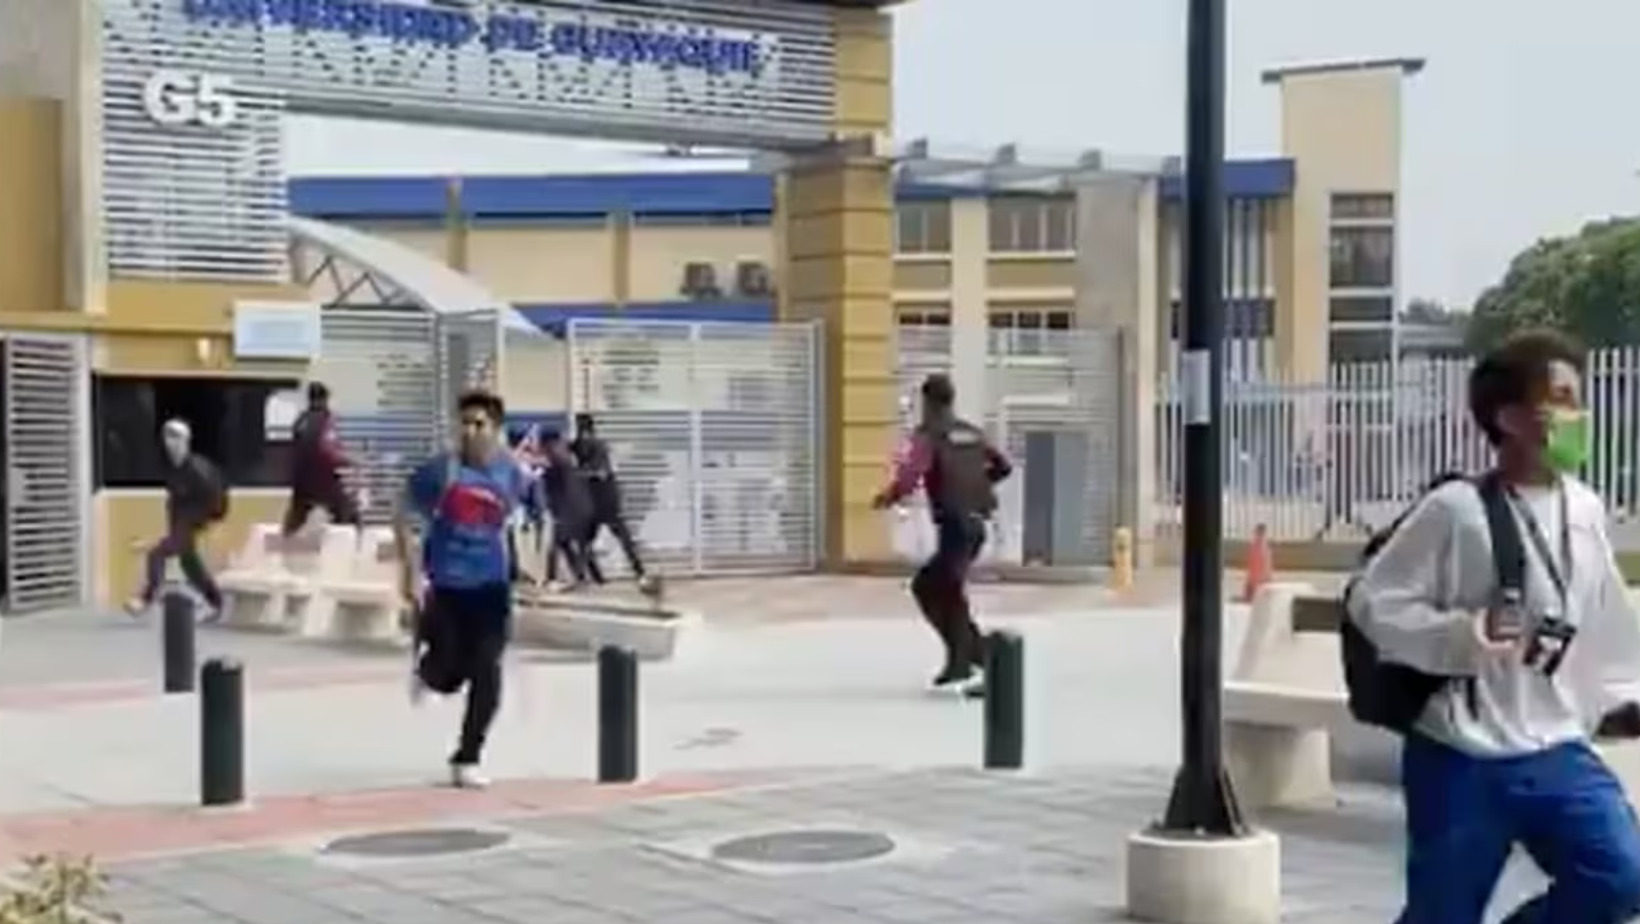 Estudiantes huyendo de la universidad tras ingreso de hombres armados al campus universitario. FOTO: Fuente externa